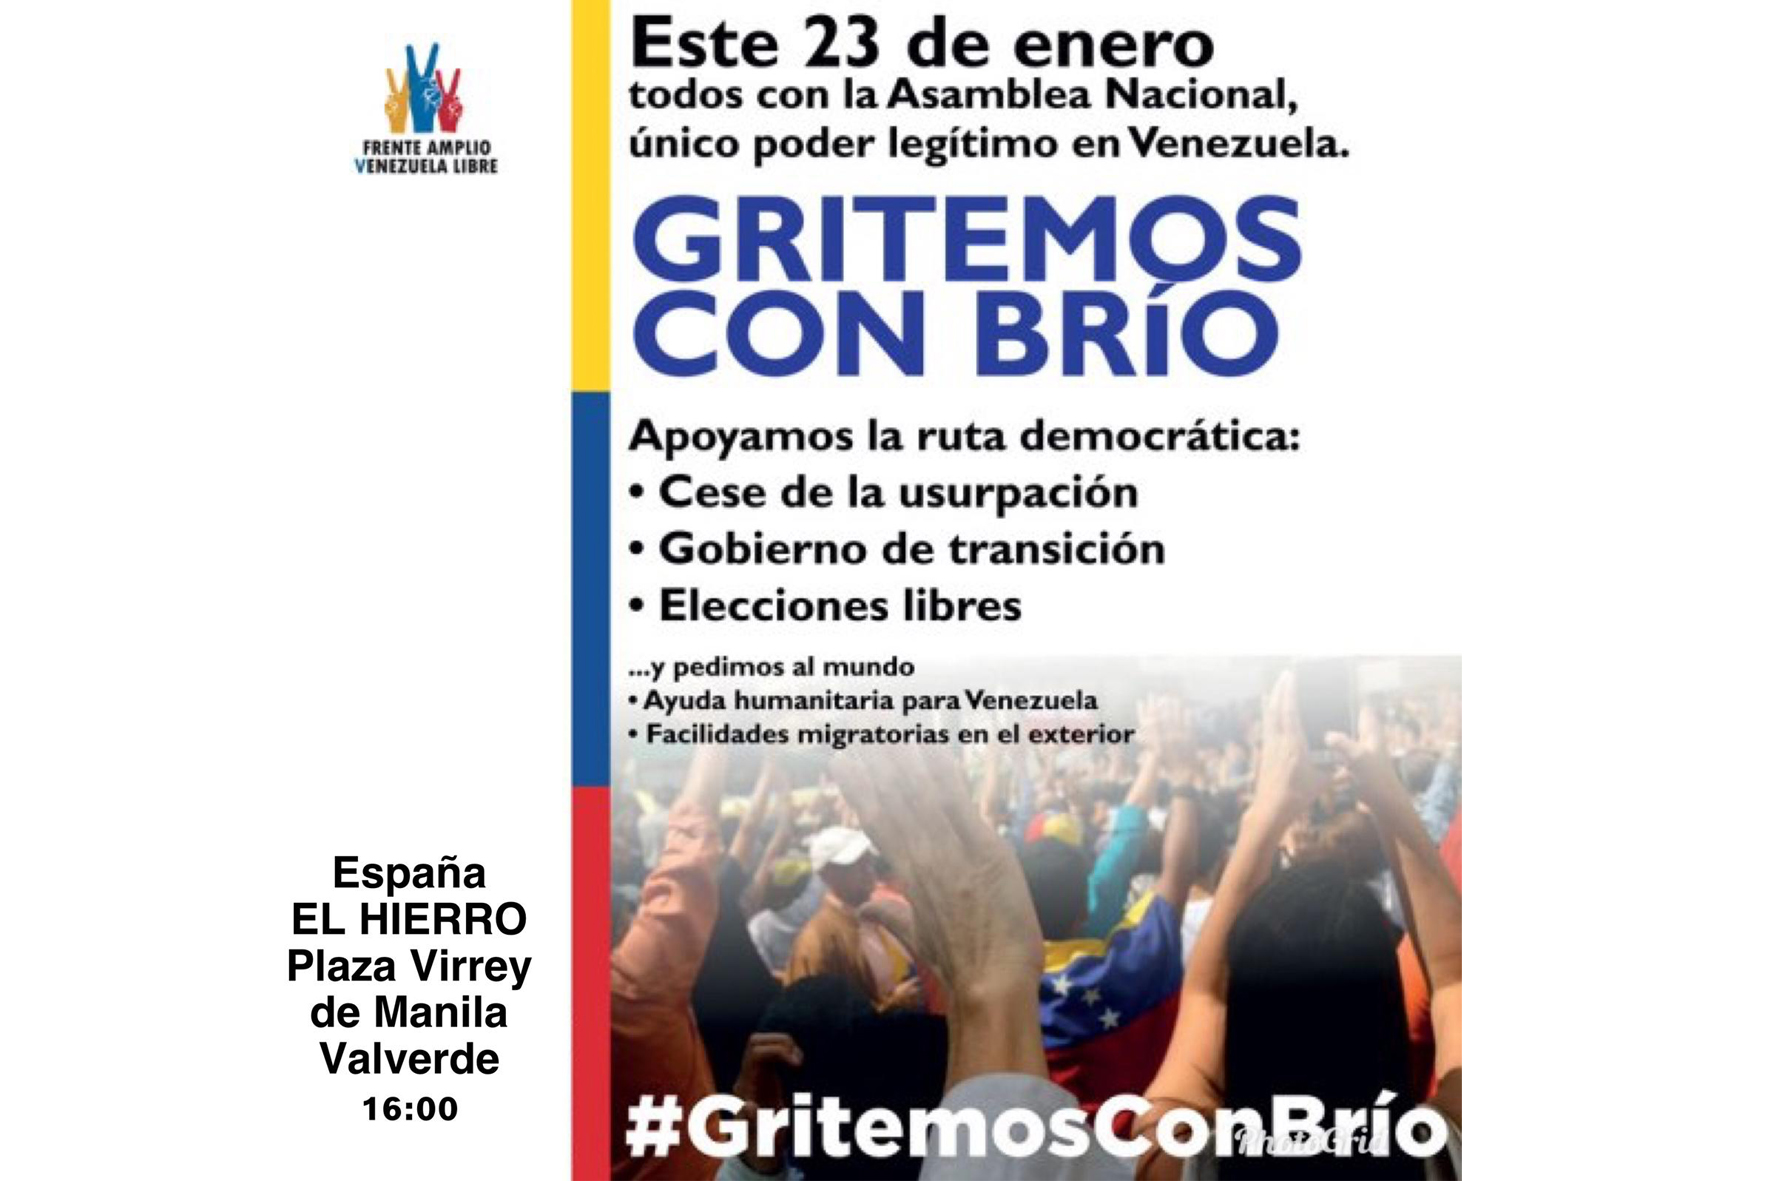 Venezolanos se concentraran mañana en El Hierro para mostrar su apoyo a la Asamblea Nacional